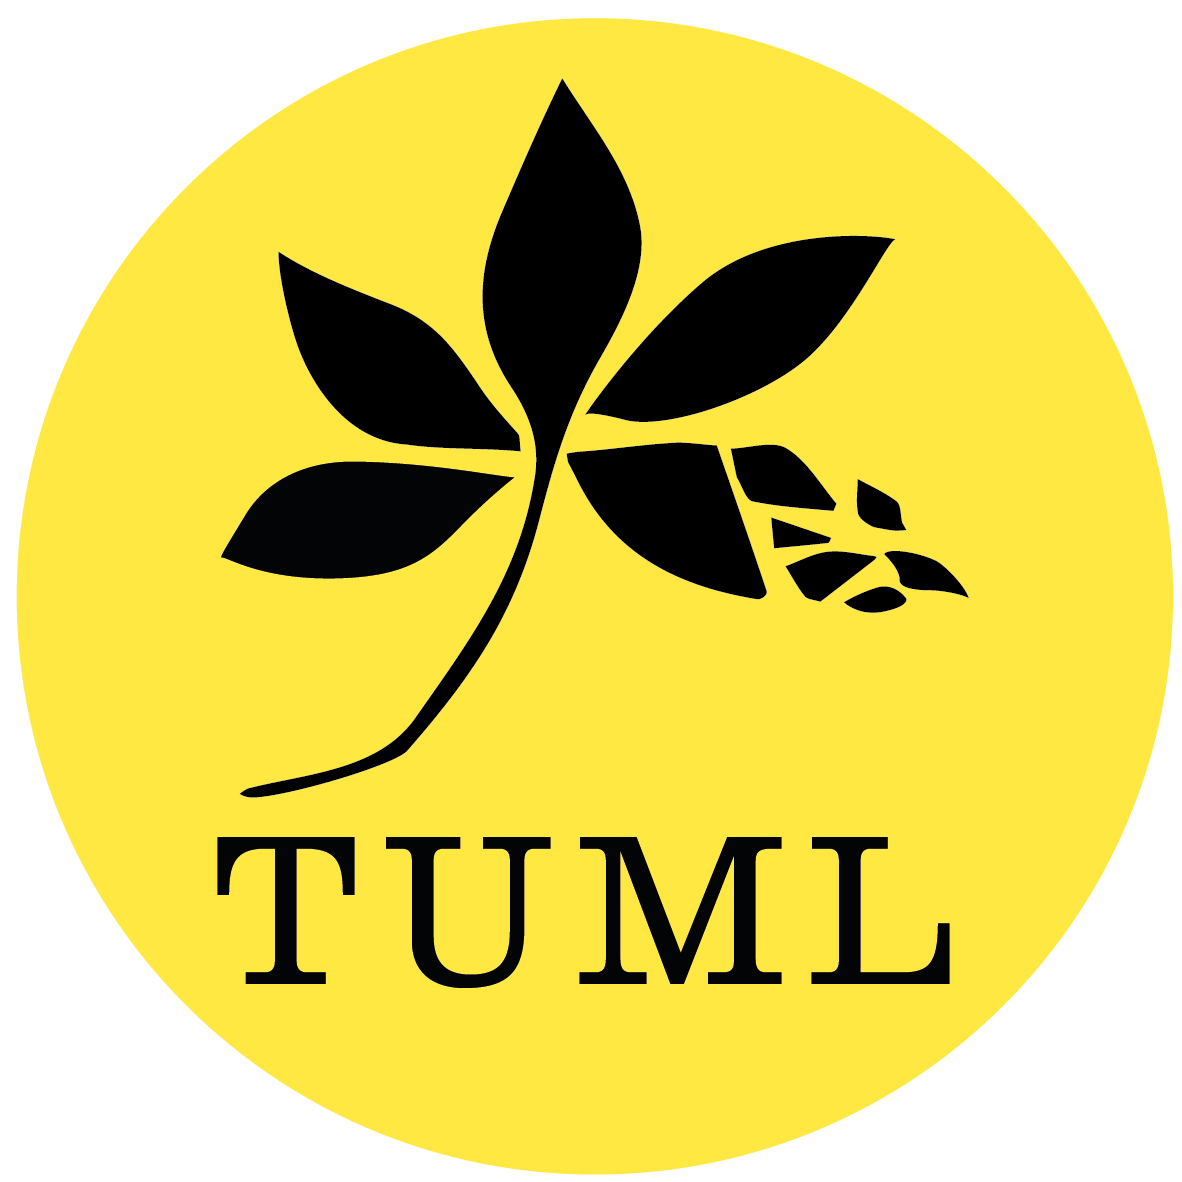 Tuml-Logo in einem gelben Kreis. Das Logo zeigt die Umrisse von einem Blatt. Darunter steht Tuml in Großbuchstaben.